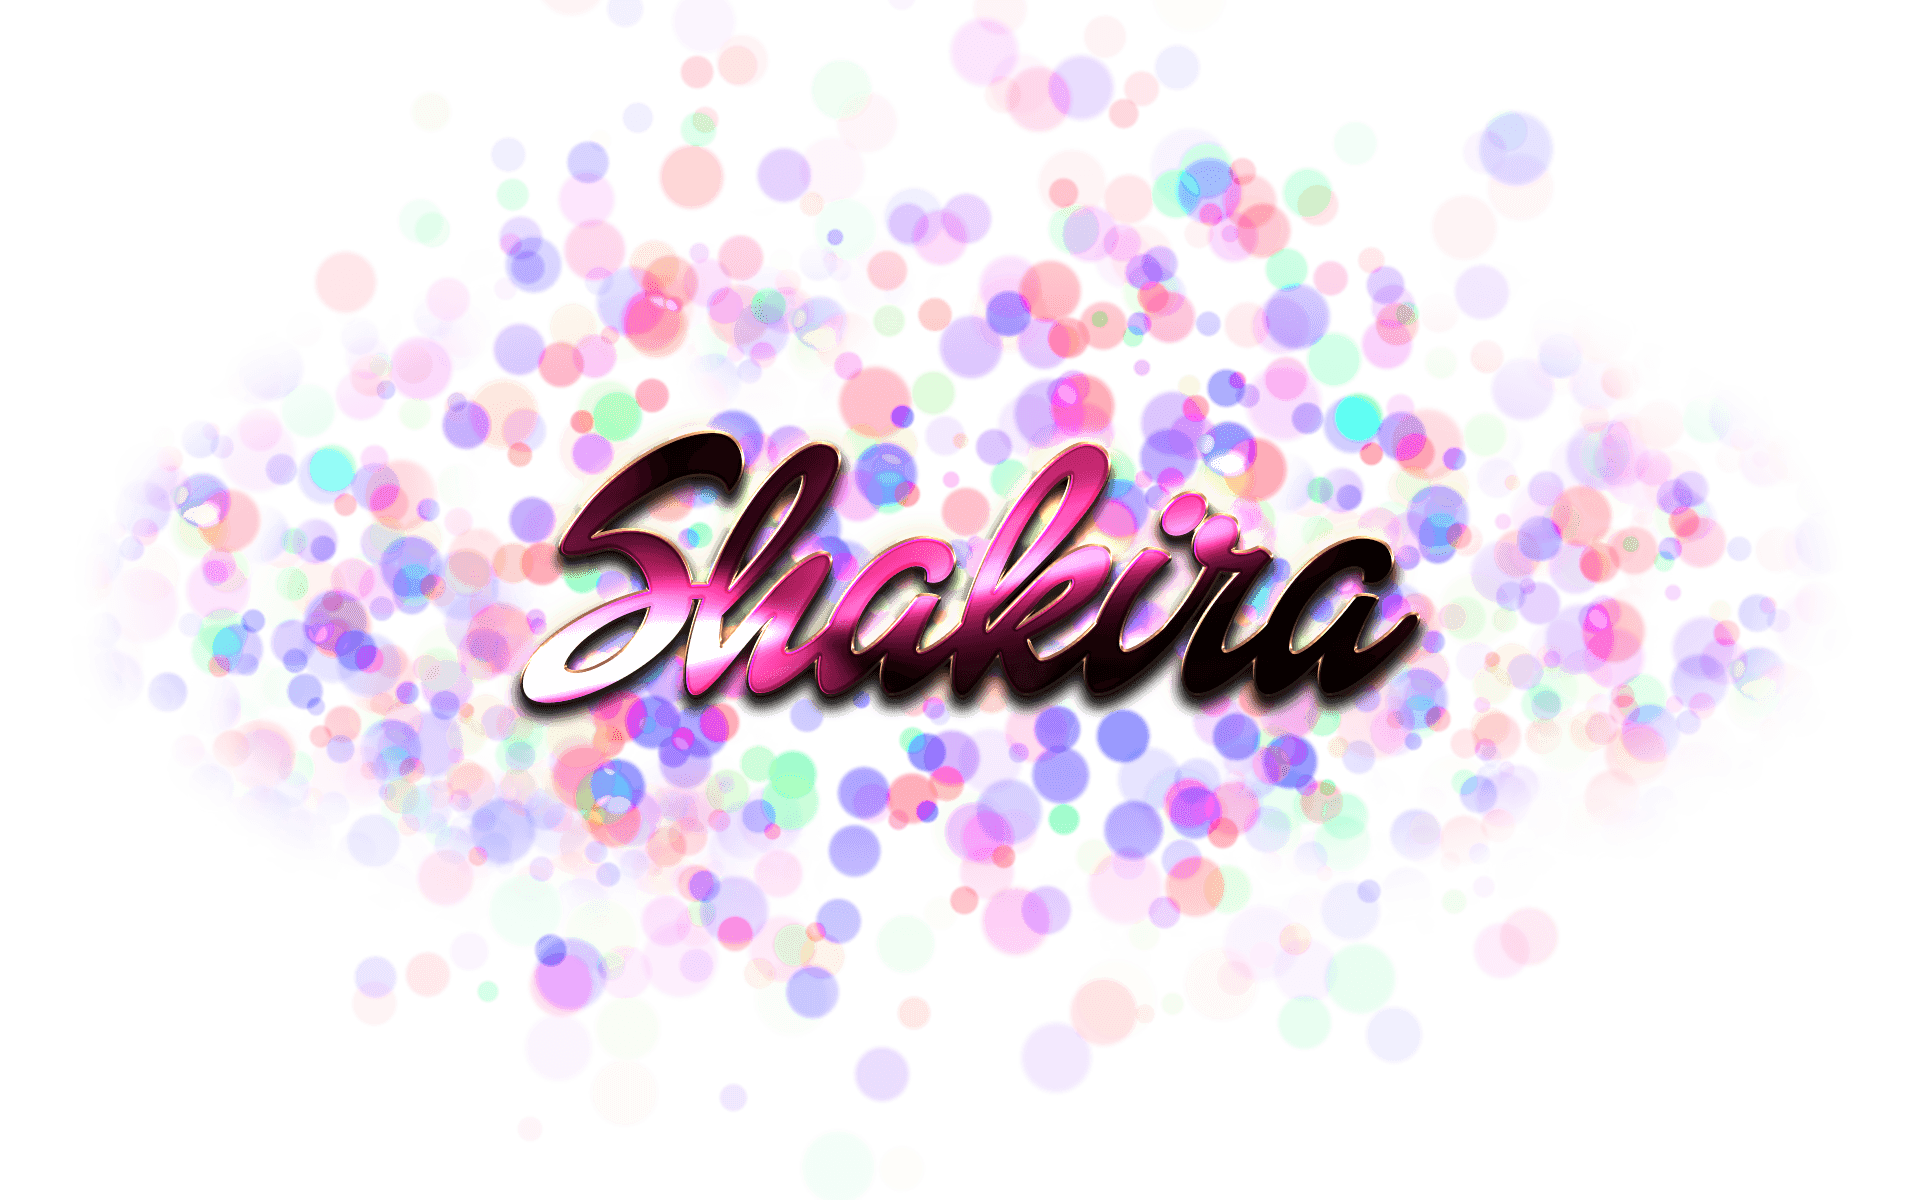 Shakira Logo - Shakira PNG Transparent Images Free Download